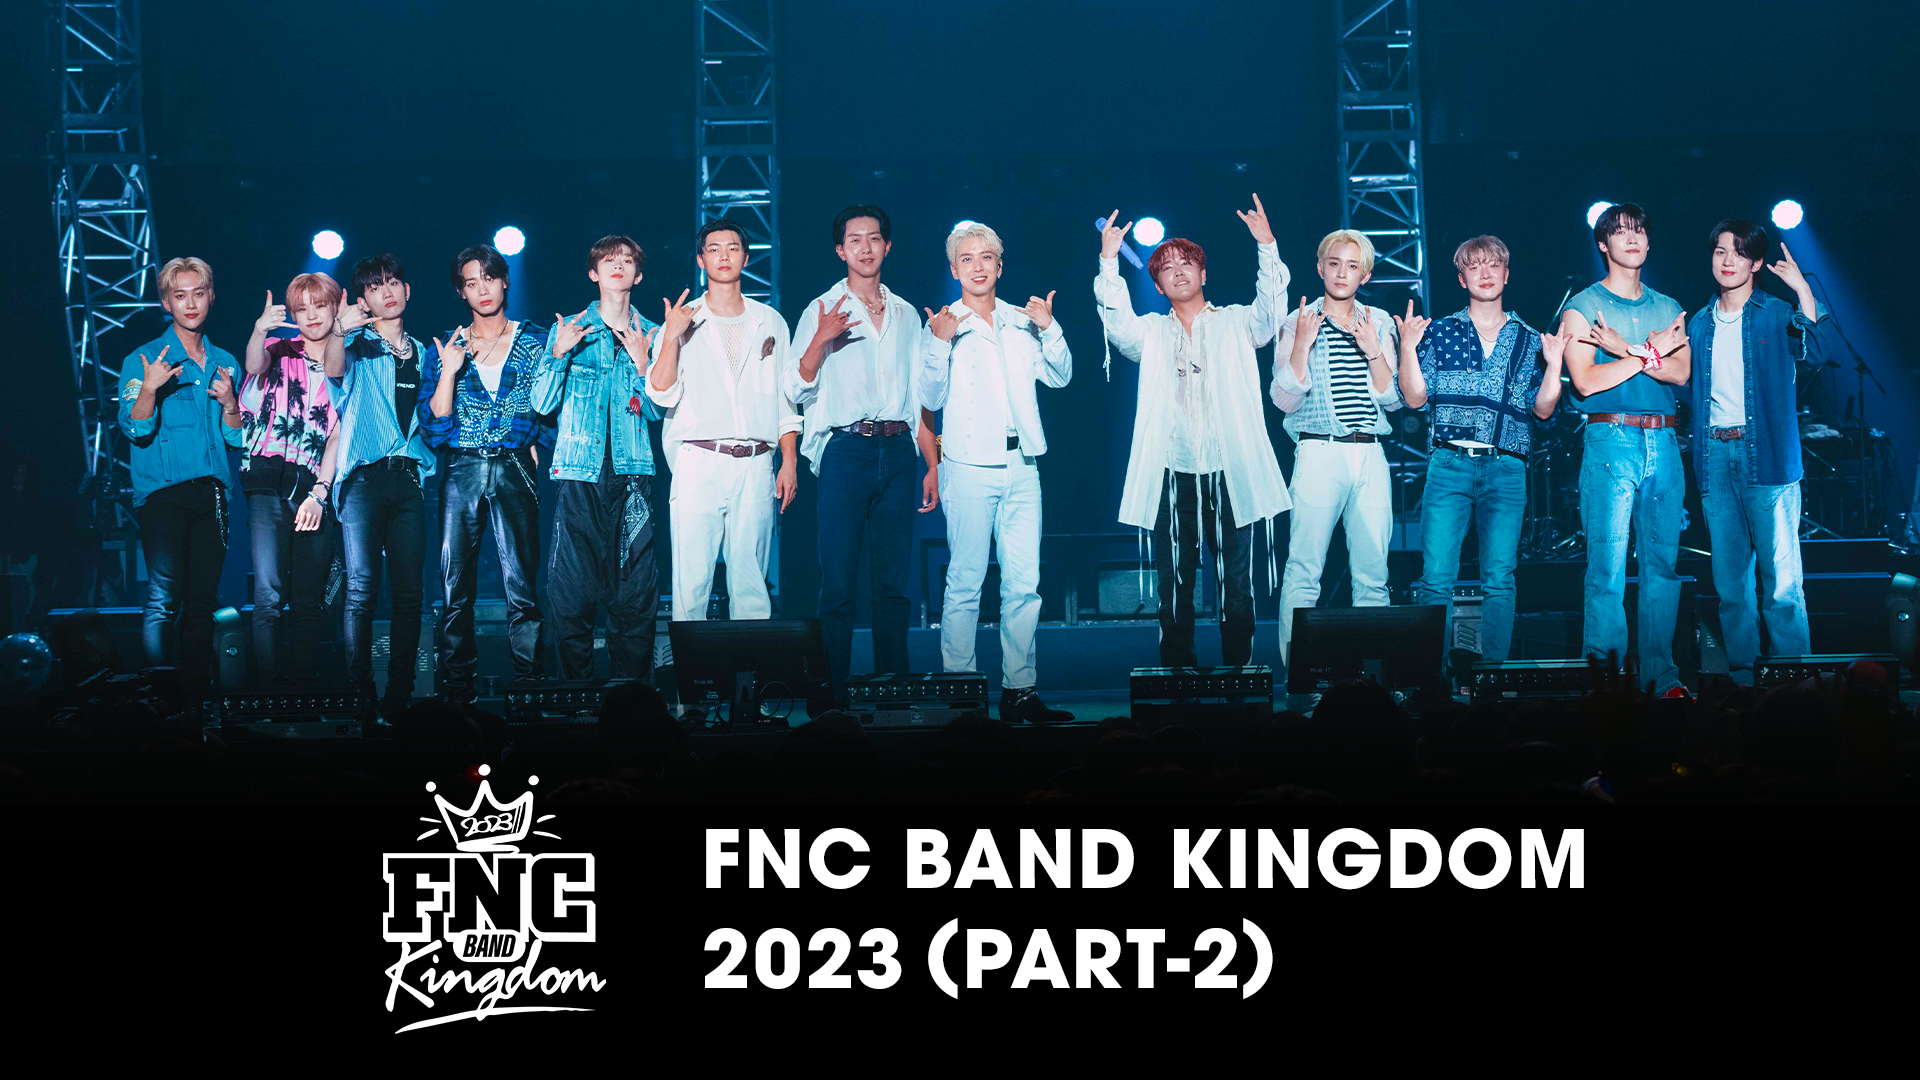 FNC BAND KINGDOM 2023 PART-2(音楽・アイドル / 2023) - 動画配信 | U 